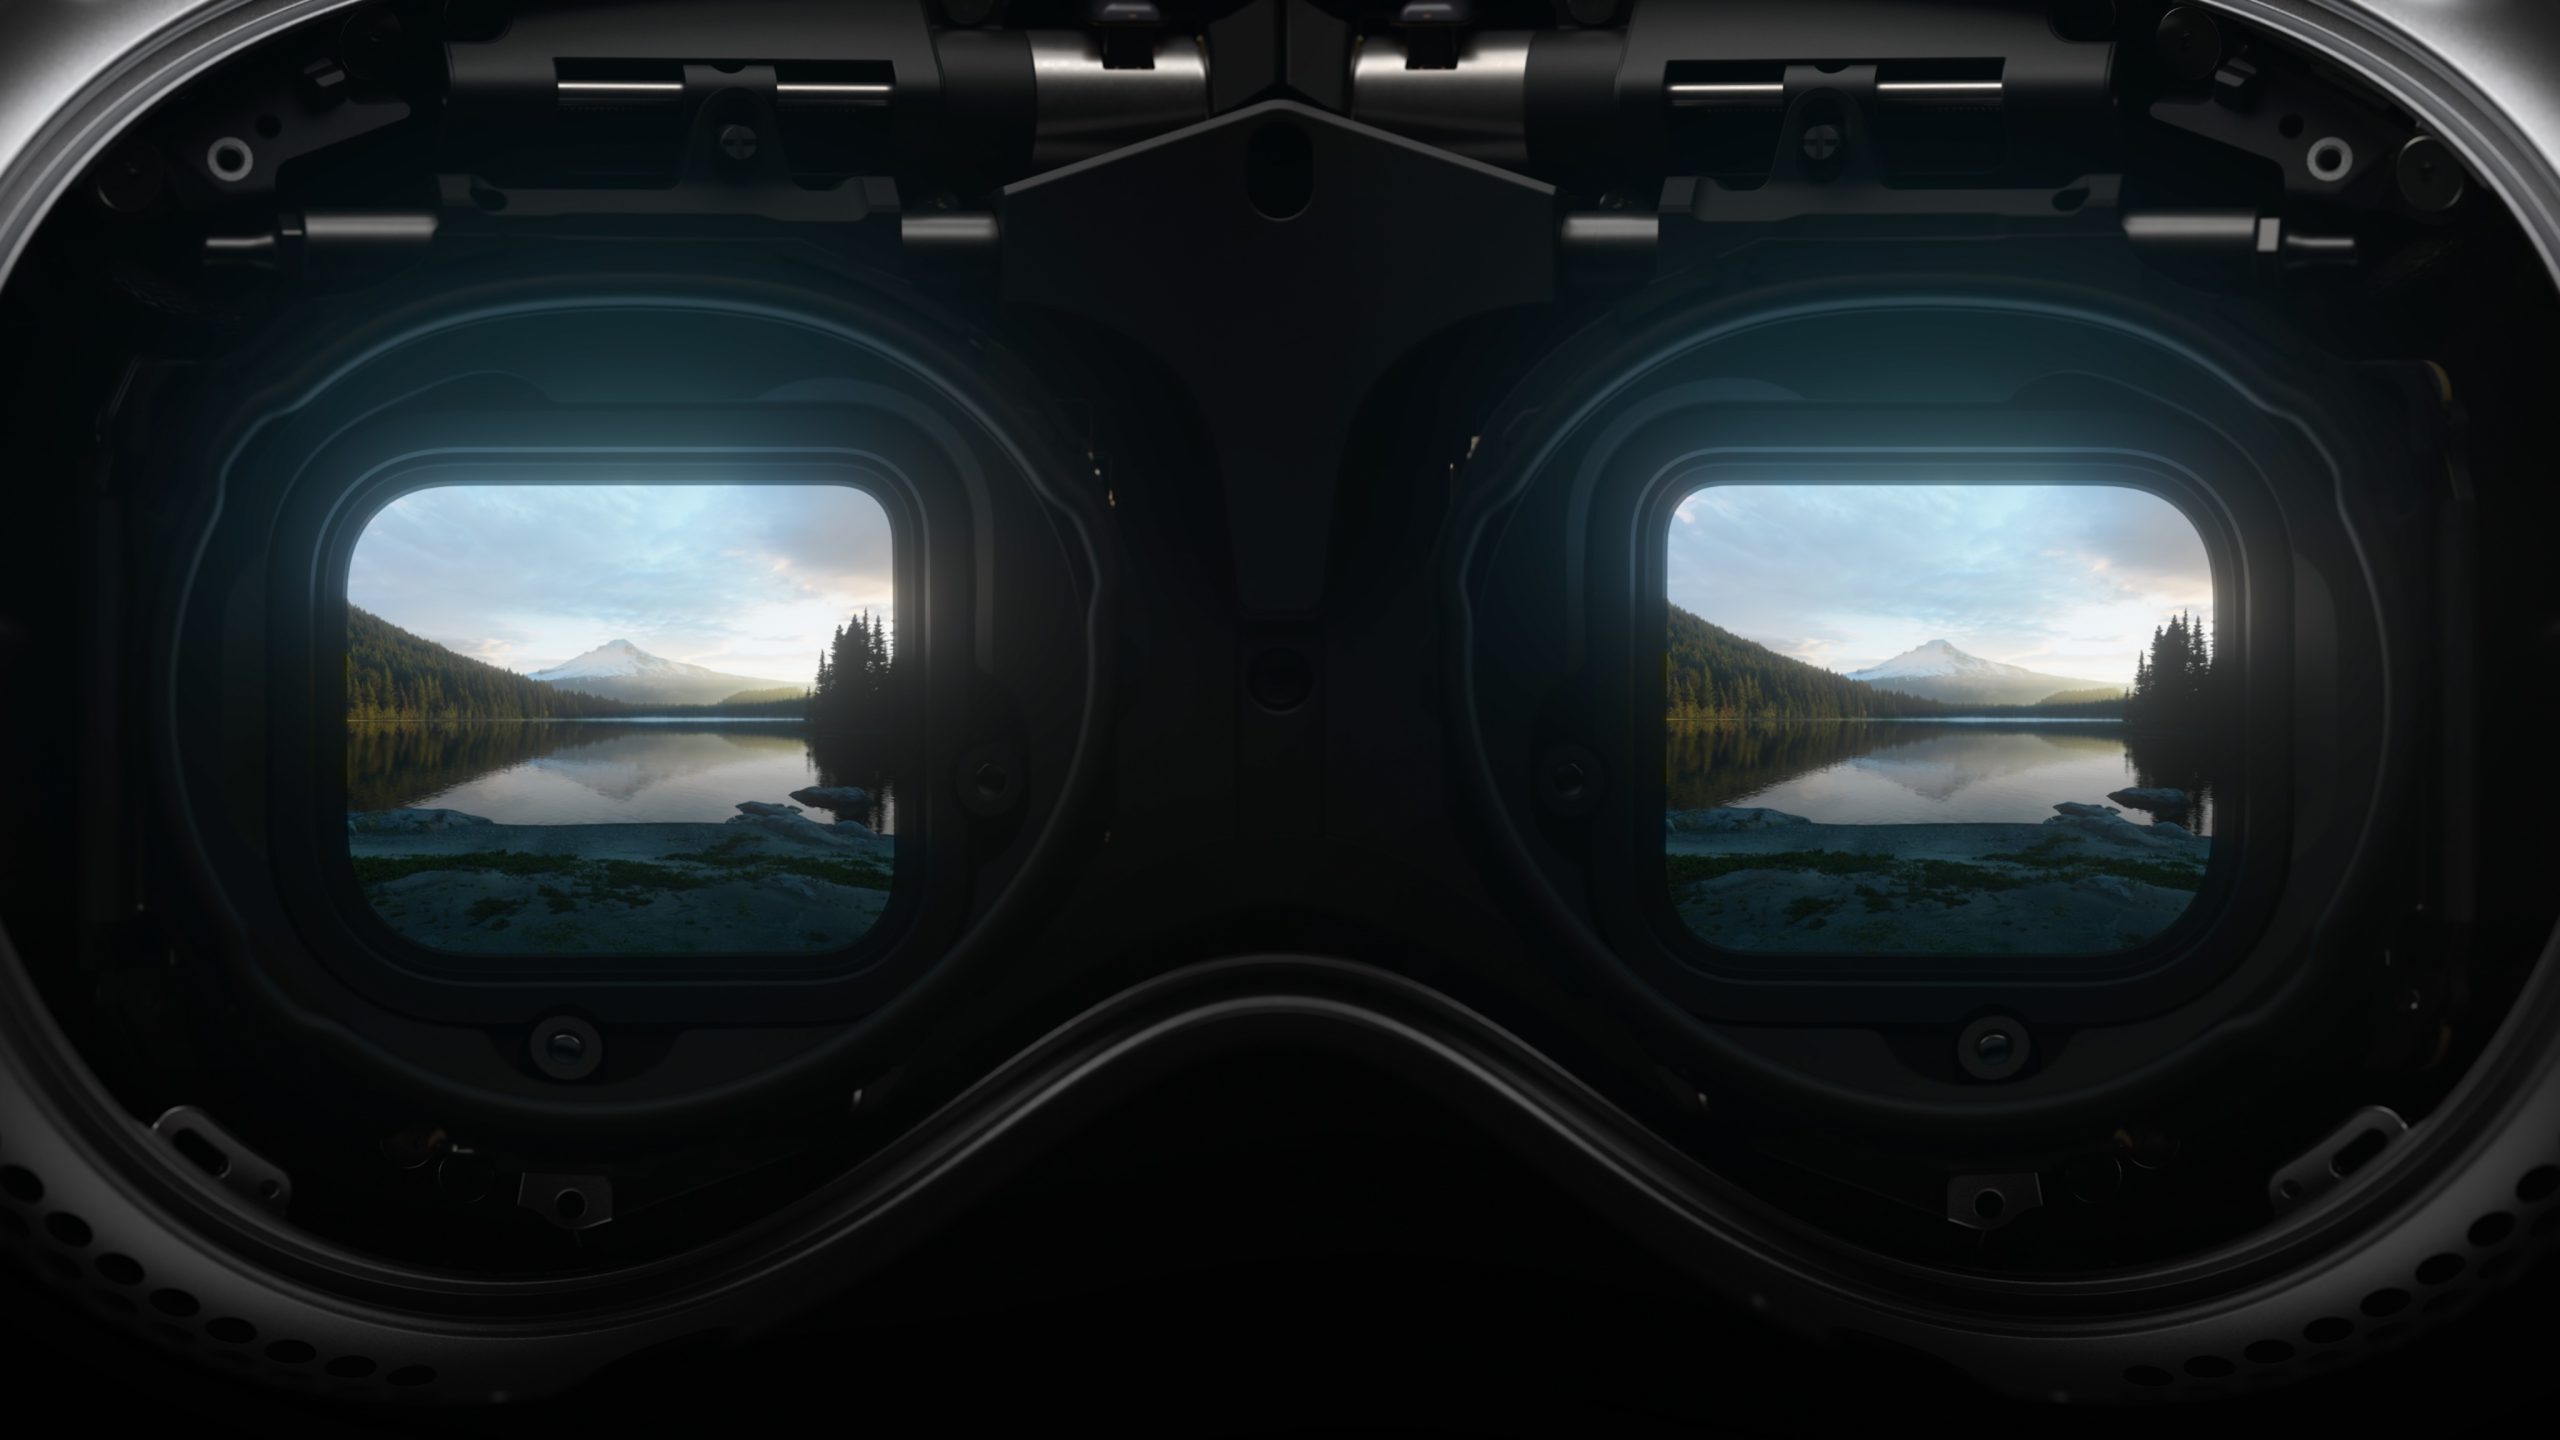 Ordinateur spatial, monde virtuel, prix : cinq choses à savoir sur le  Vision Pro, le premier casque de réalité virtuelle et augmentée d'Apple